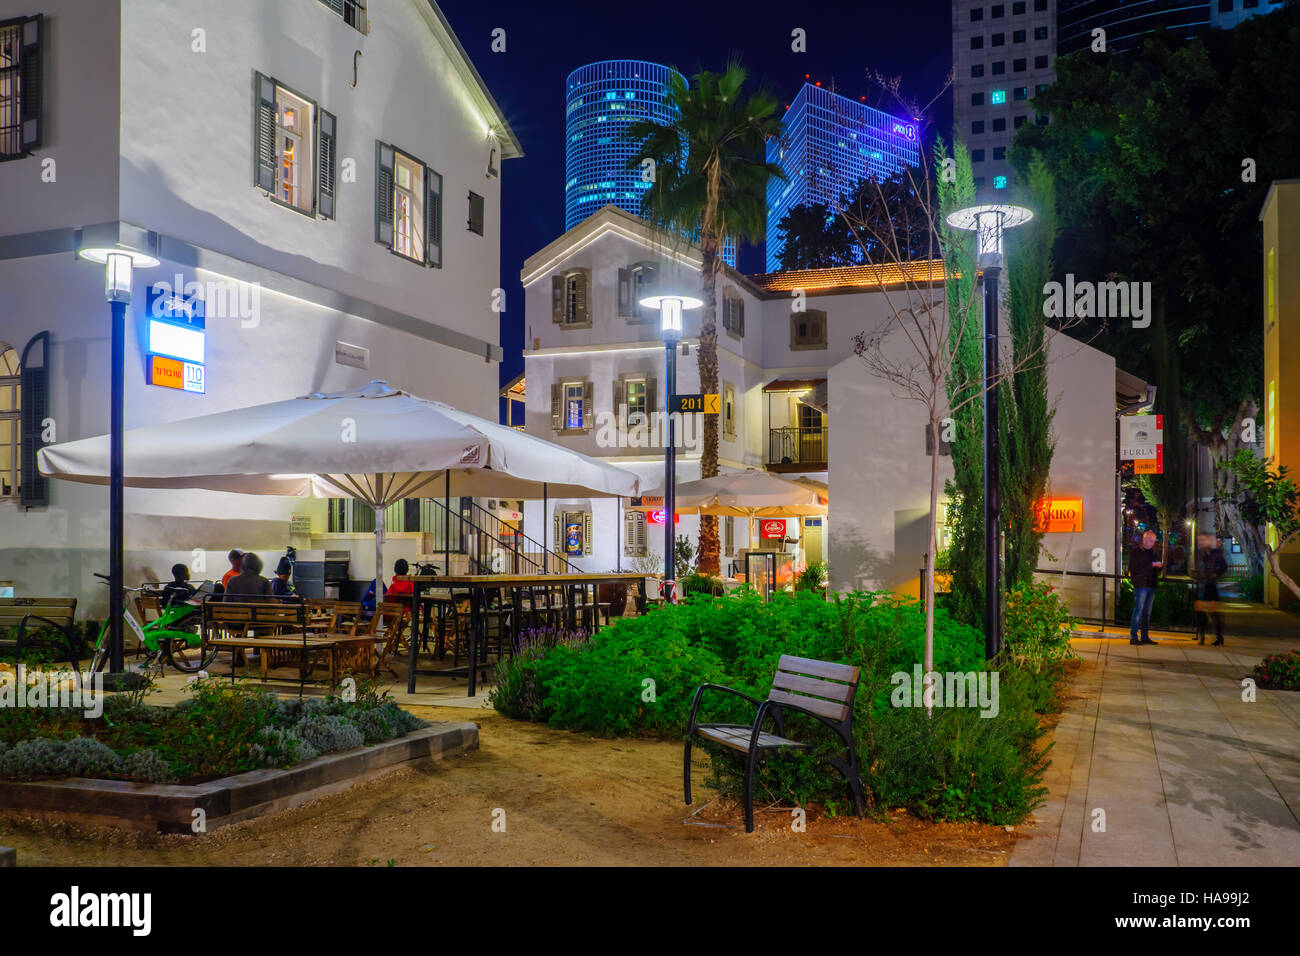 TEL AVIV, Israele - 14 gennaio 2016: Scena Notturna del composto Sarona, a Tel Aviv, Israele. Il suo un rinnovato insediamento dei Templari, girare nel tempo libero e Foto Stock